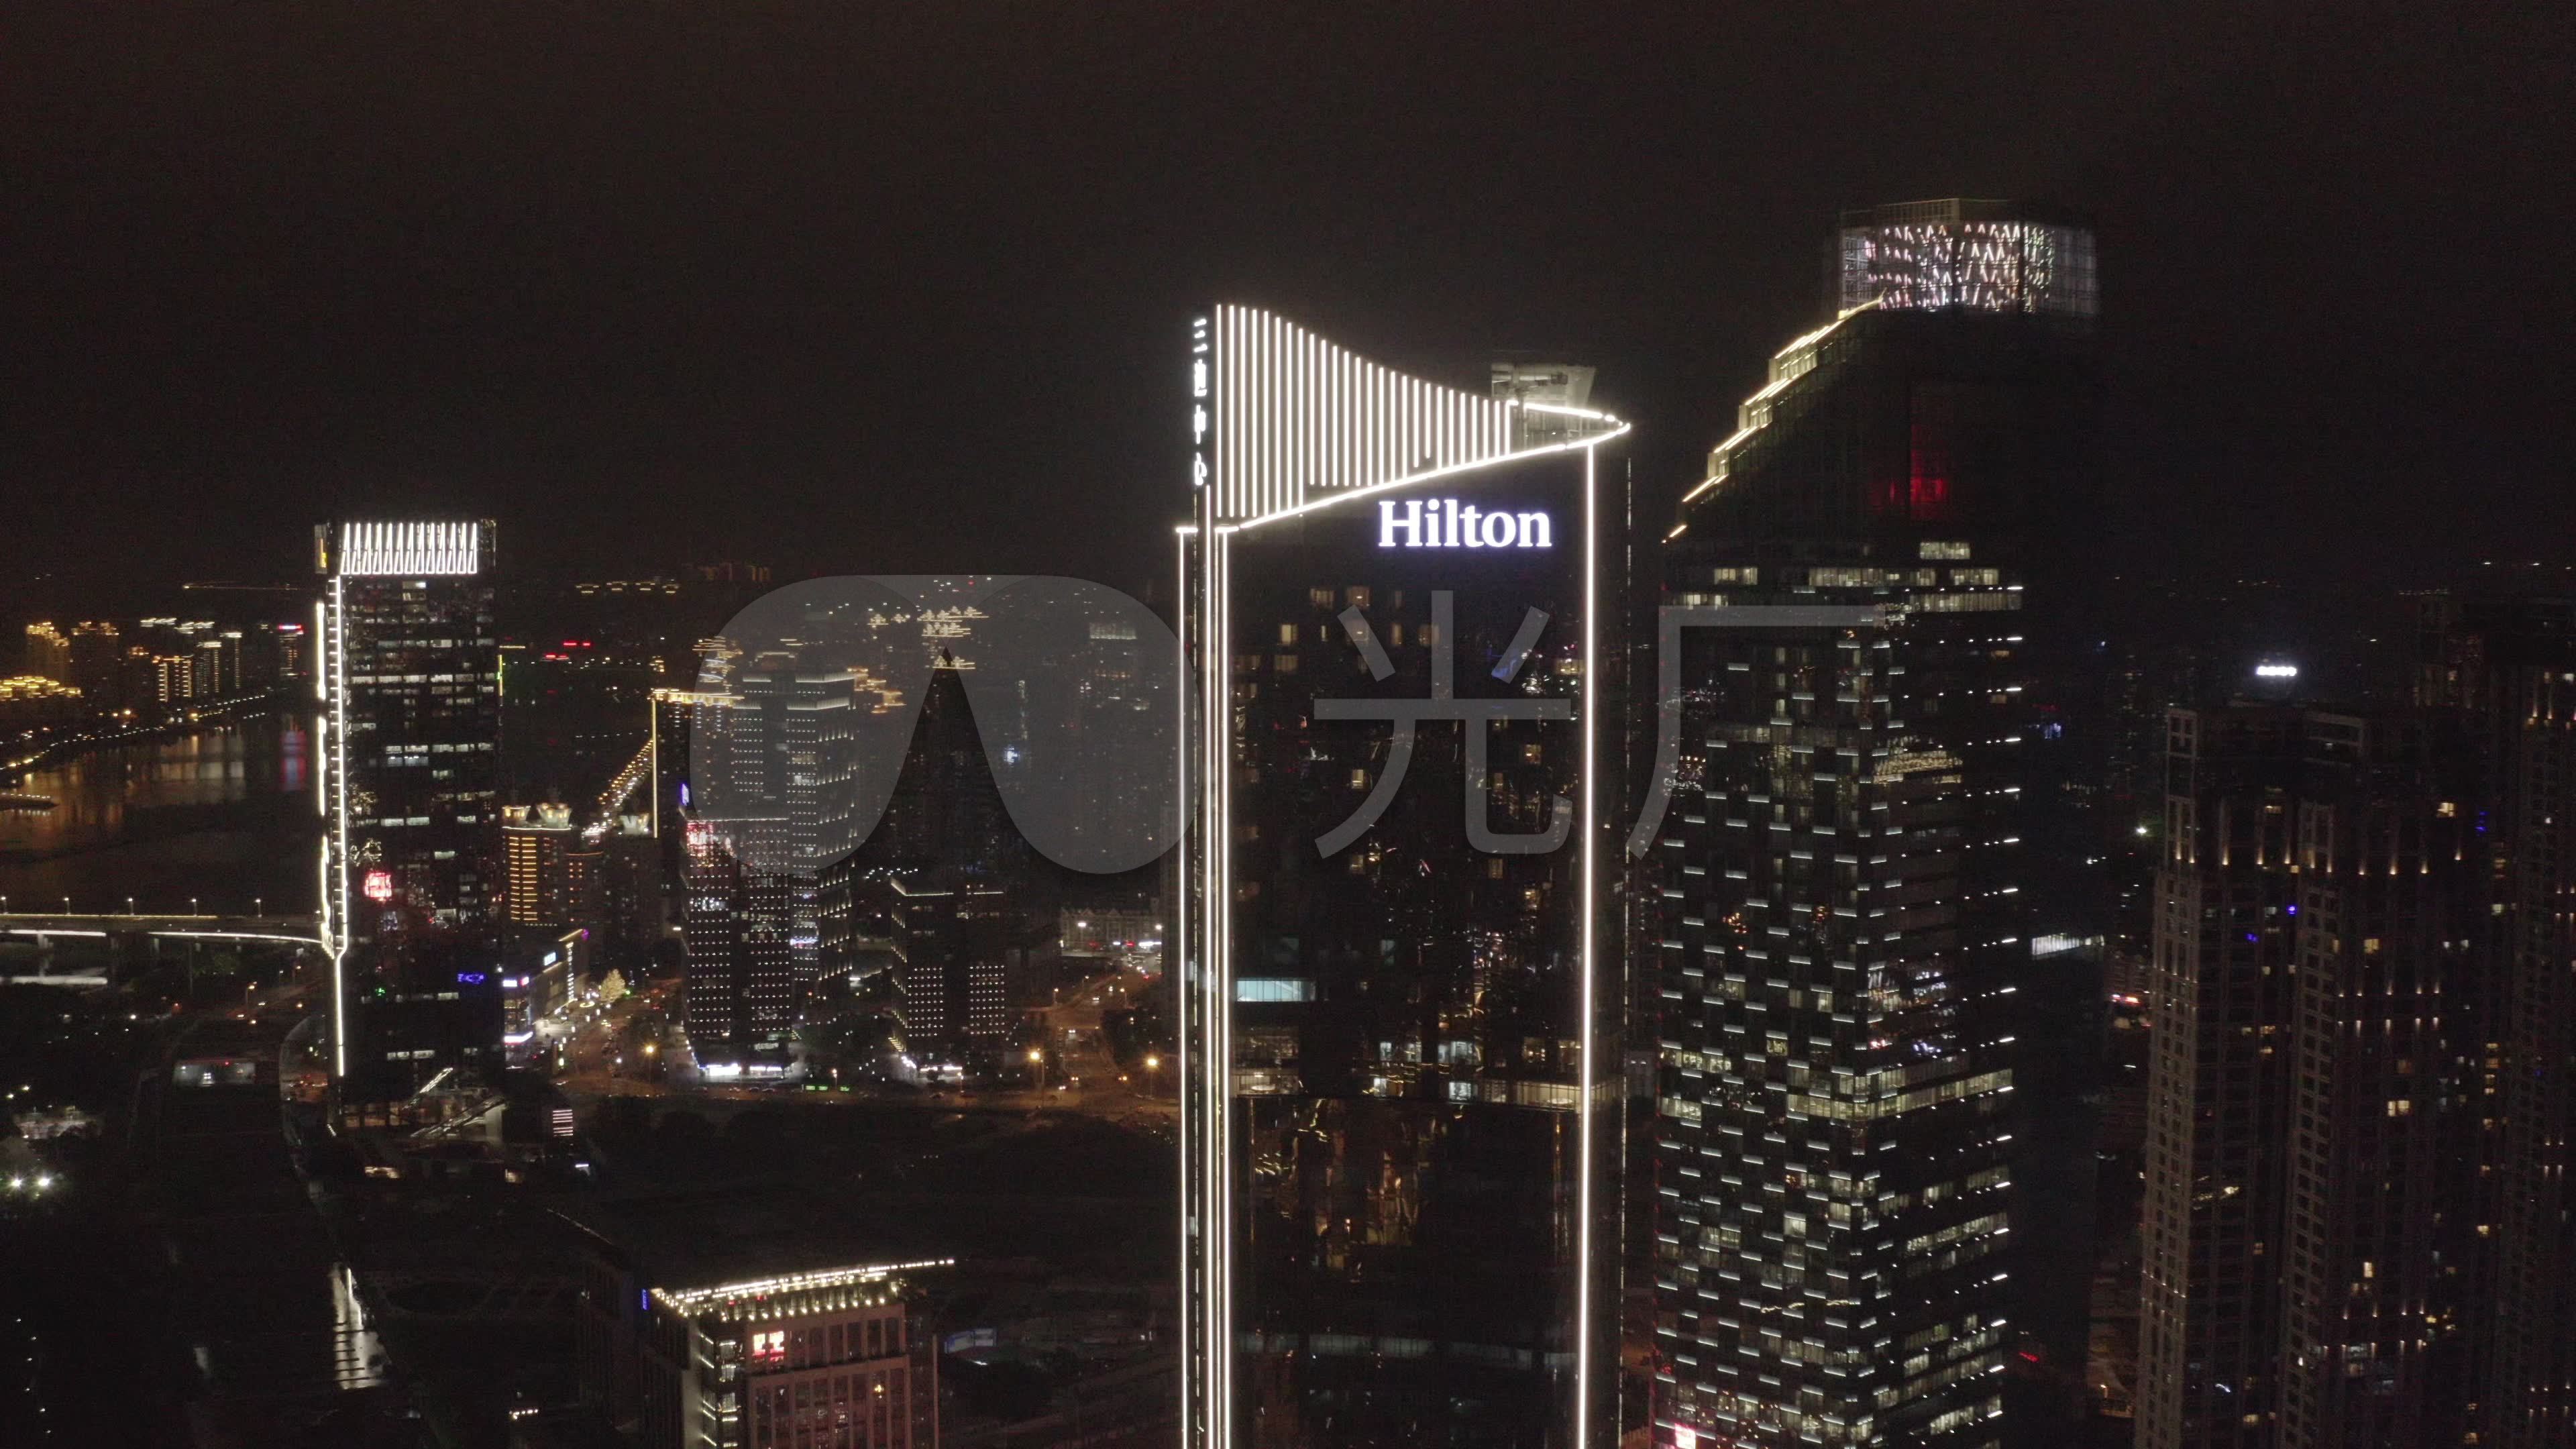 希尔顿首次亮相台州，成为市区核心地段首家国际品牌酒店_资讯频道_悦游全球旅行网